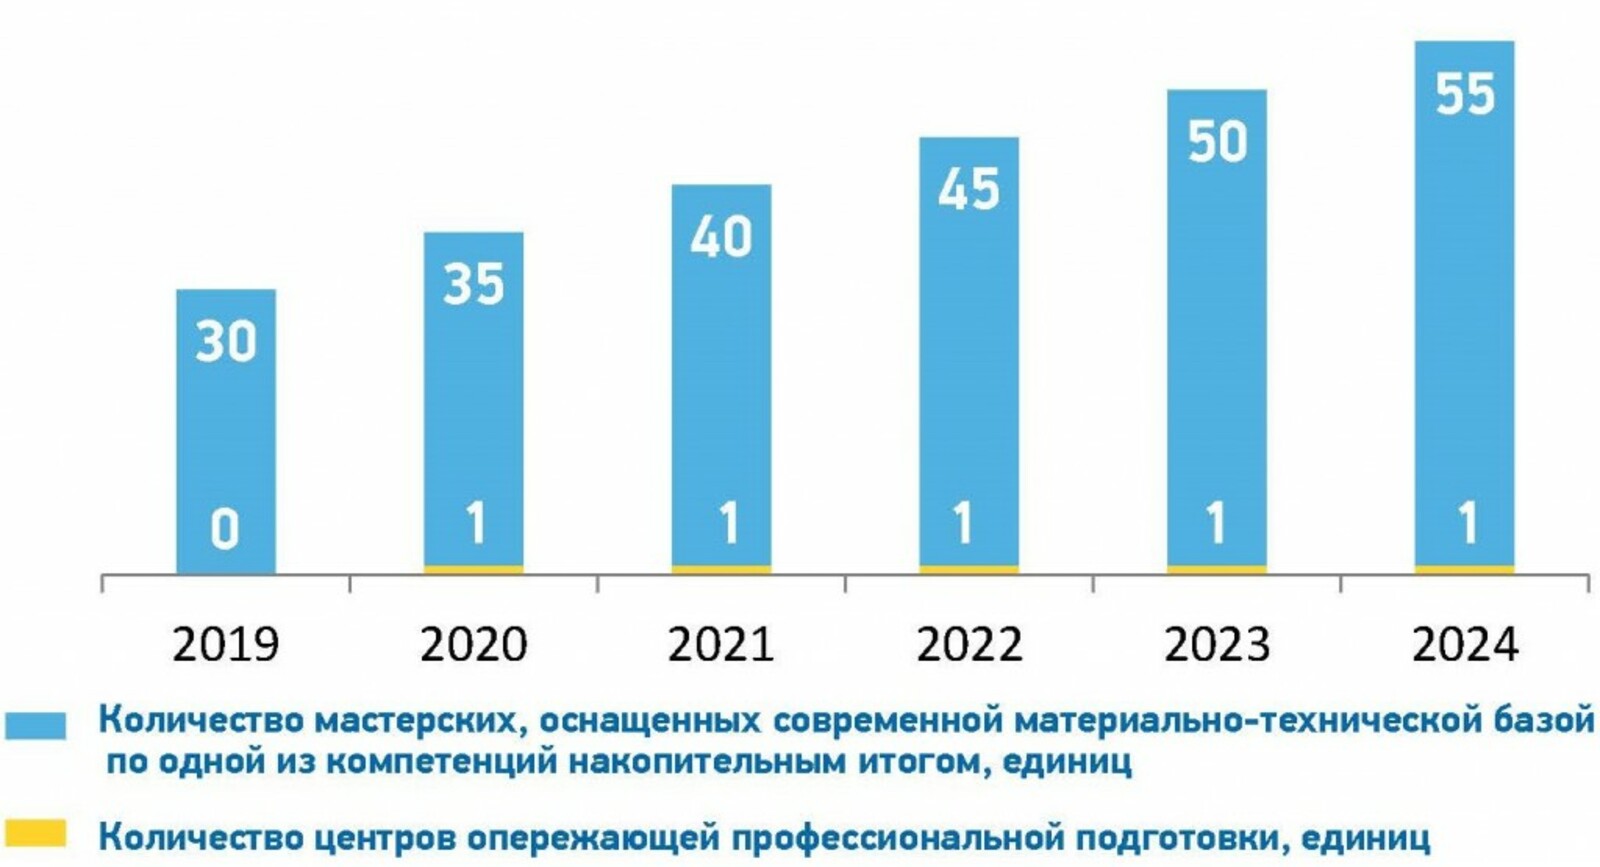 К 2024 году в республике должно быть не менее 50 мастерских по компетенциям WorldSkills